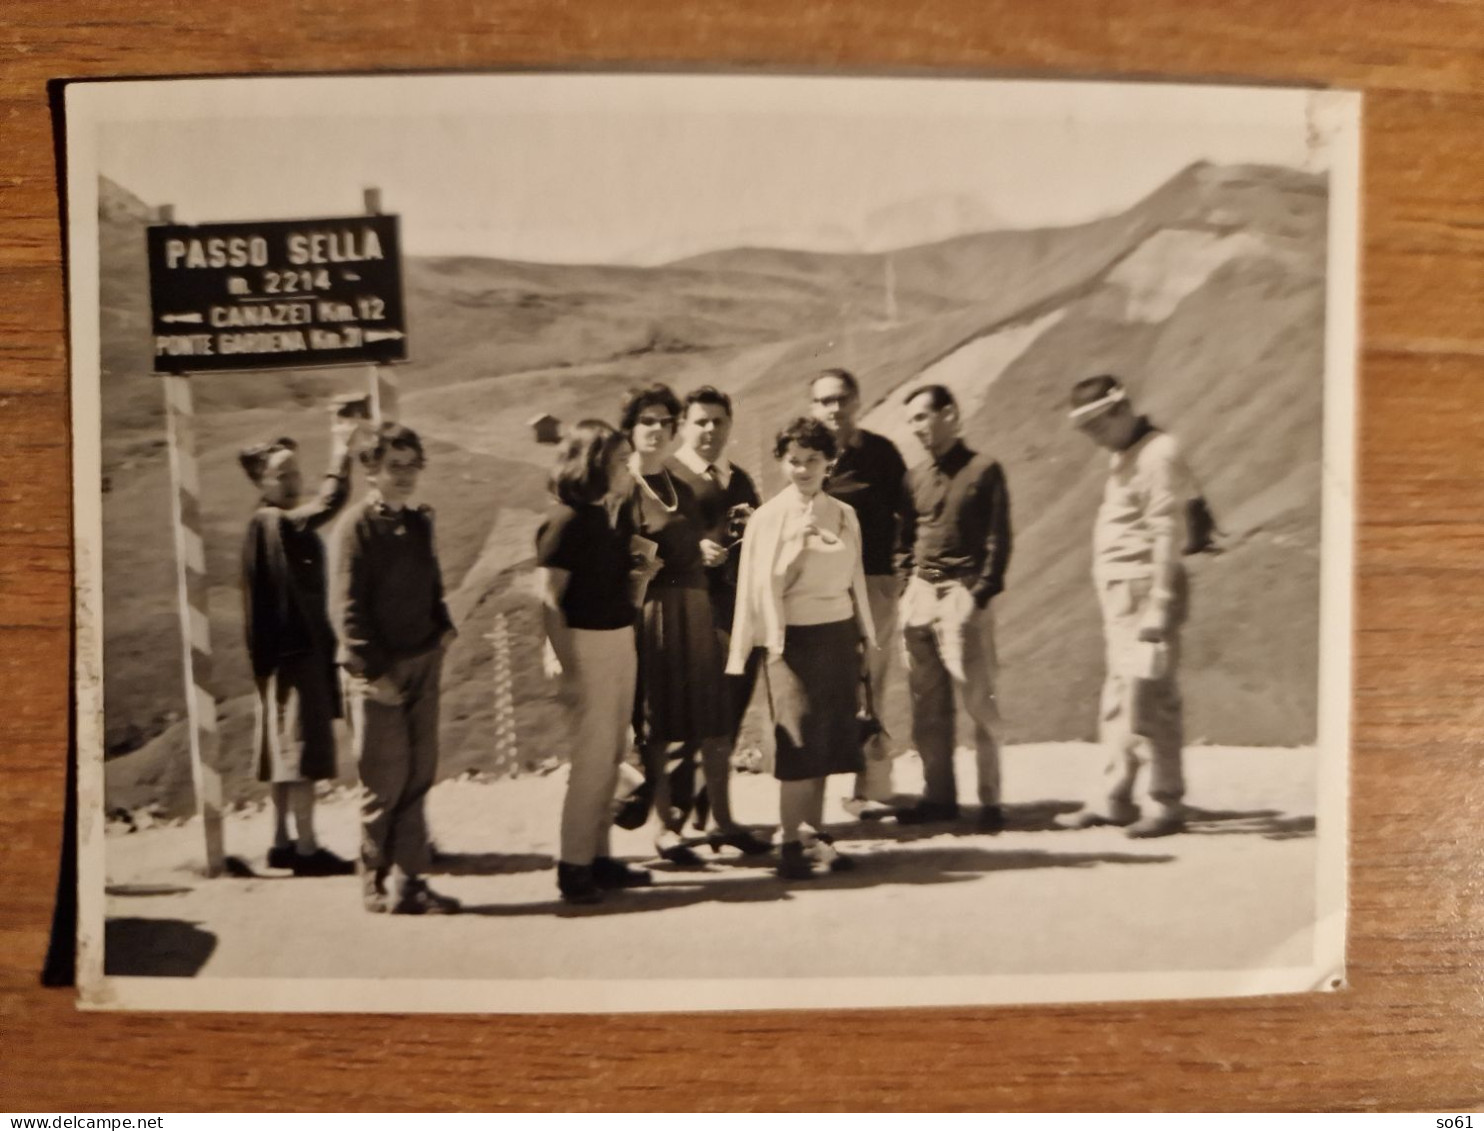 19302. Fotografia D'epoca Passo Sella 1961 - 10,5x7,5 - Plaatsen